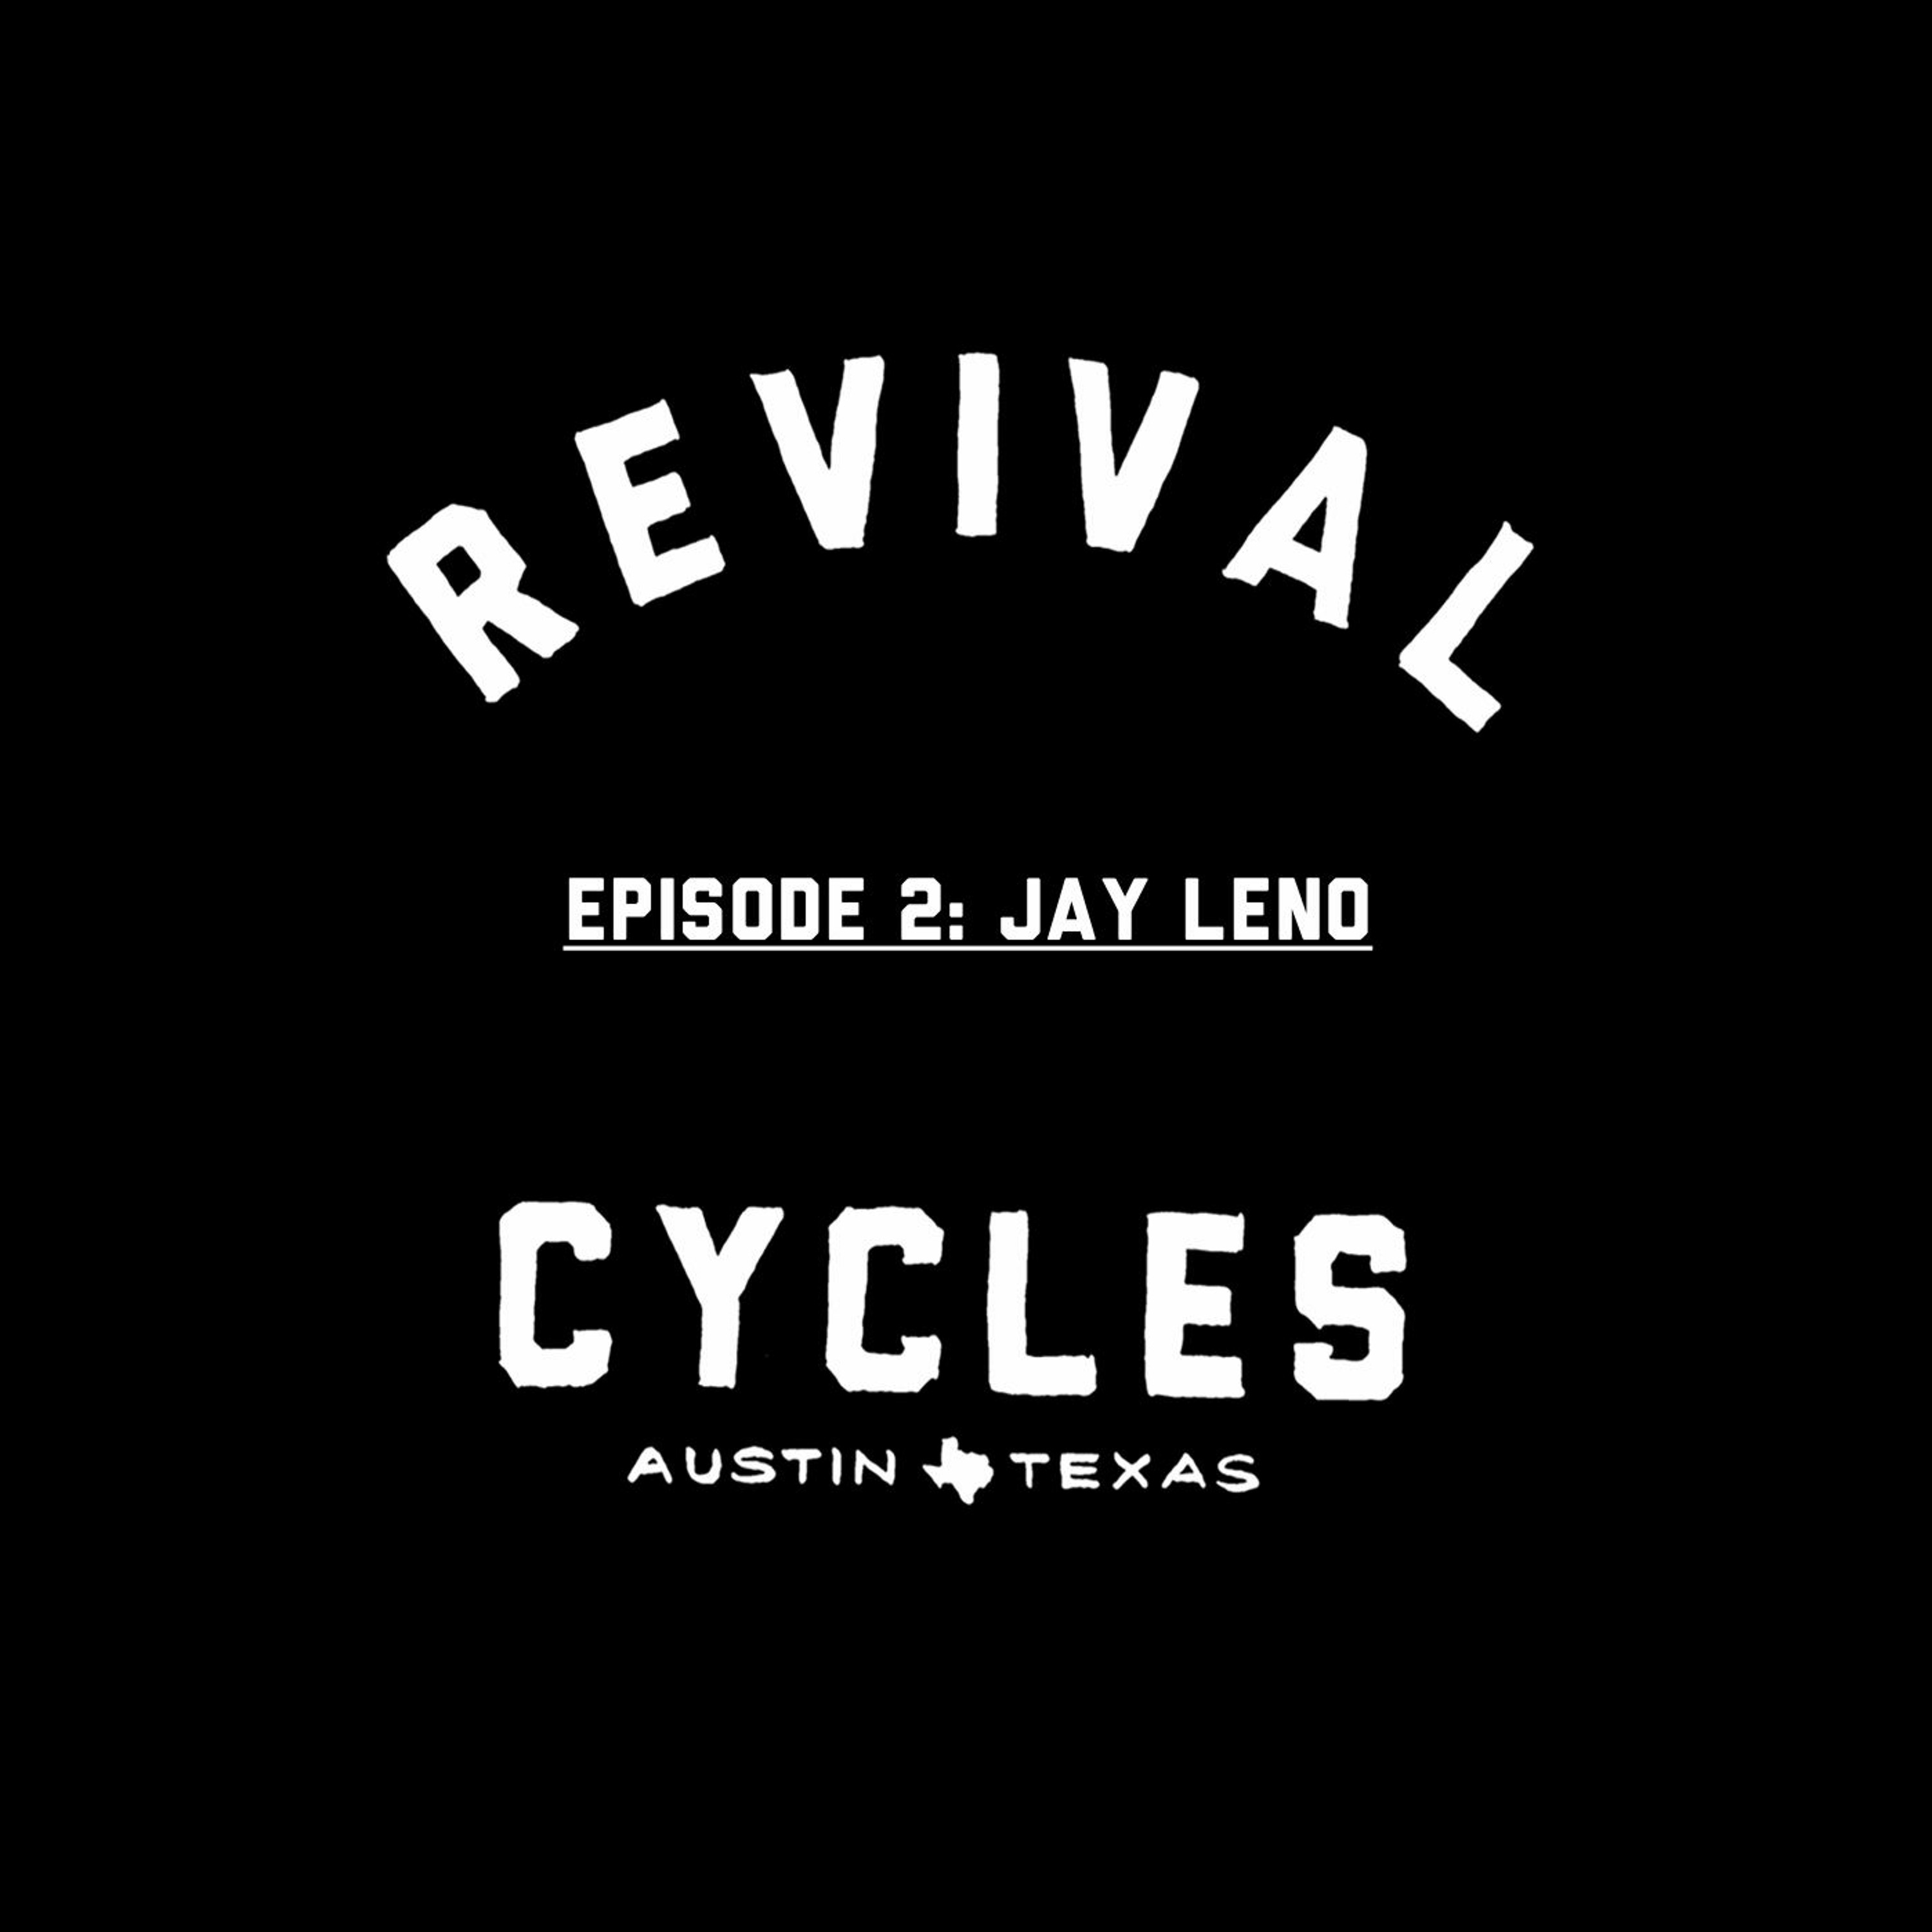 Episode 2: Jay Leno